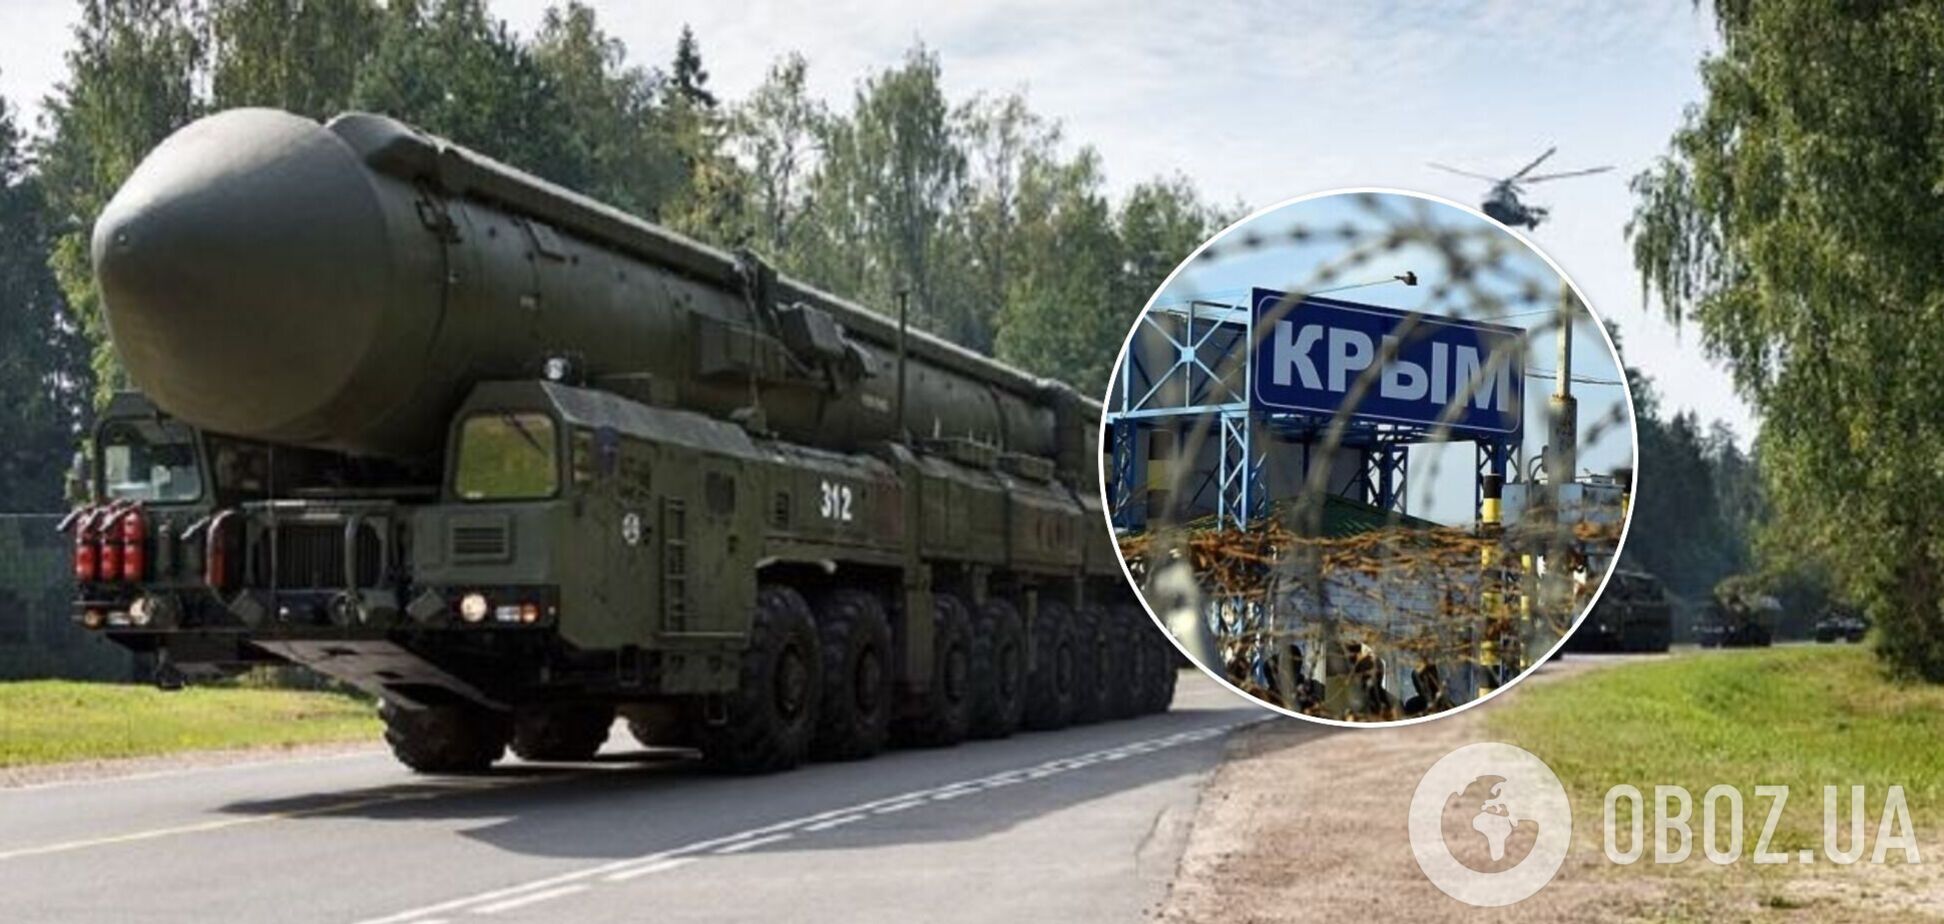 Россия могла разместить в оккупированном Крыму ядерное оружие: в Центре оборонных стратегий озвучили признаки